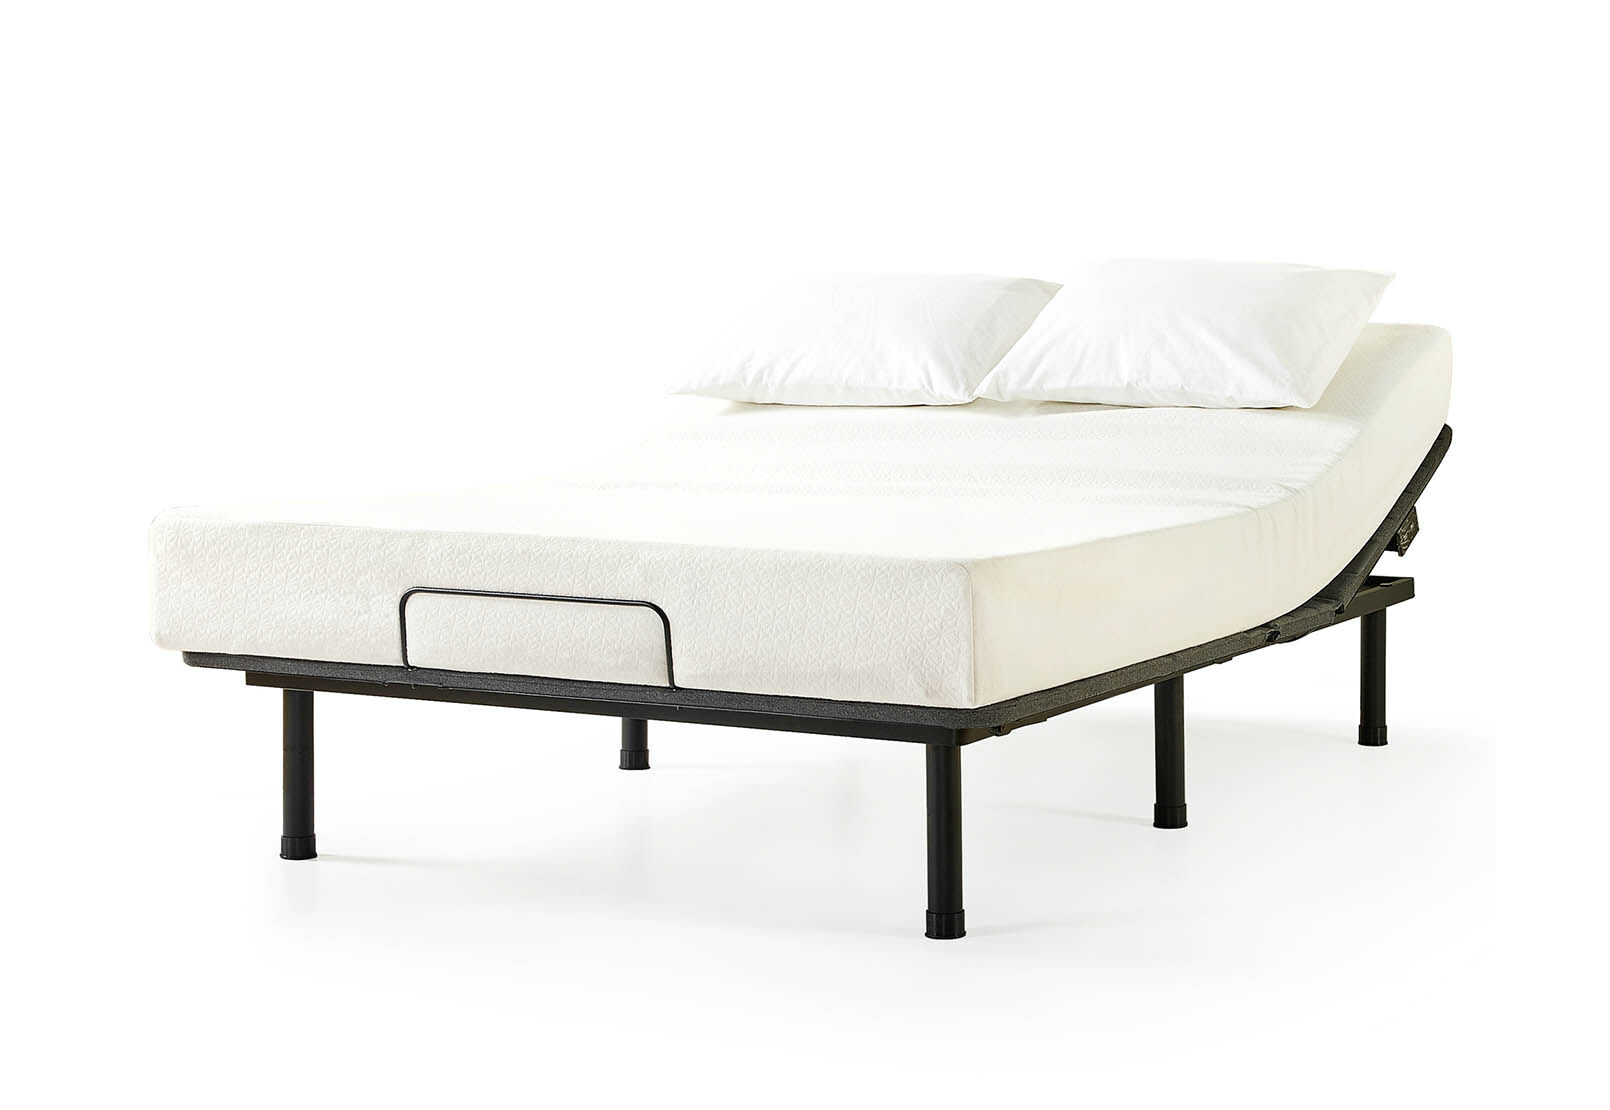 Amart Furniture, Electric Adjustable Bed Frame Queen